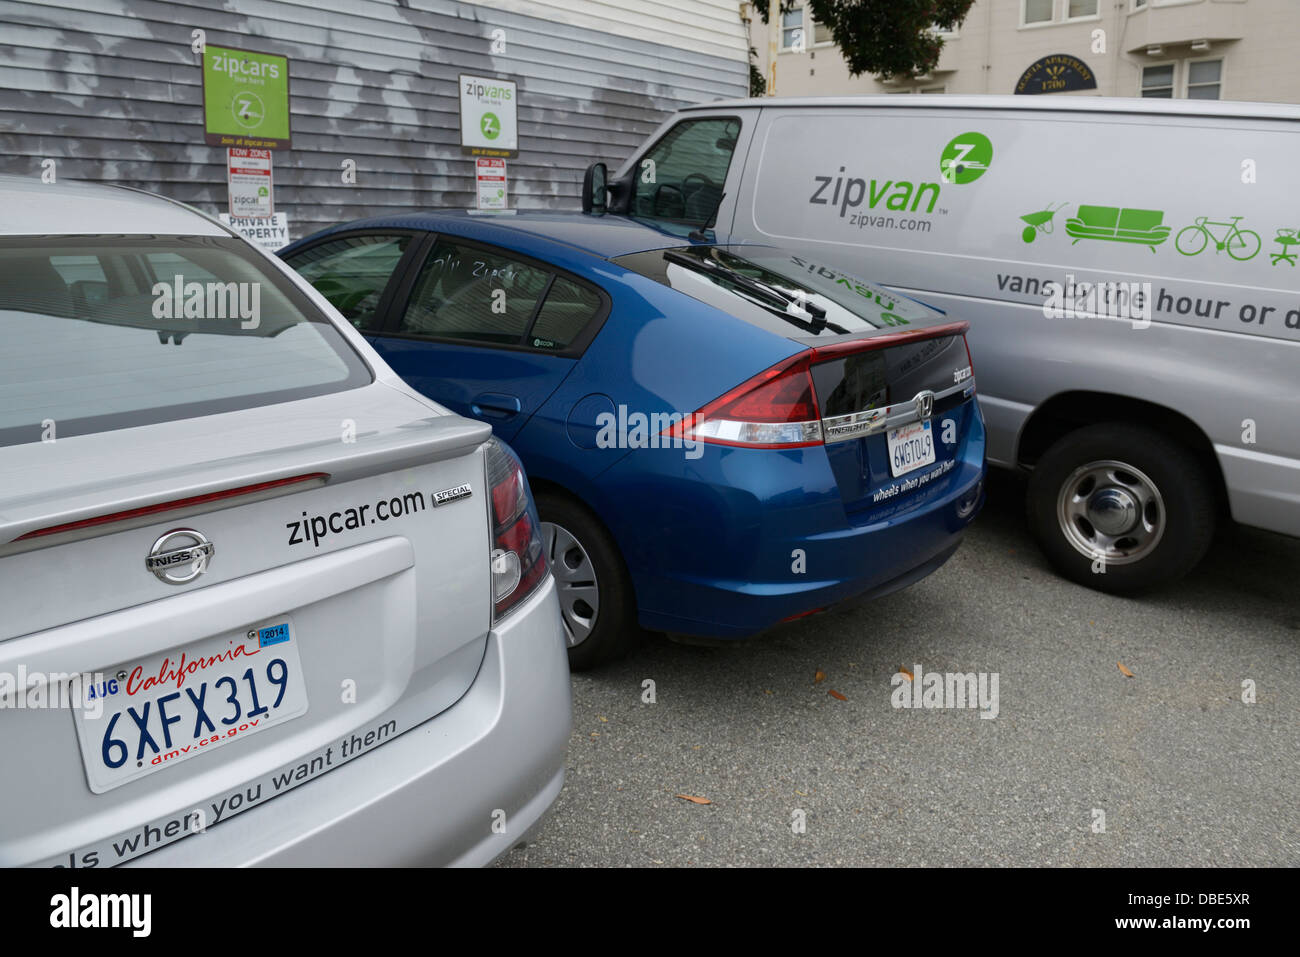 Zipcar und Zipvan Car-sharing-Fahrzeuge, s.f., CA Stockfoto